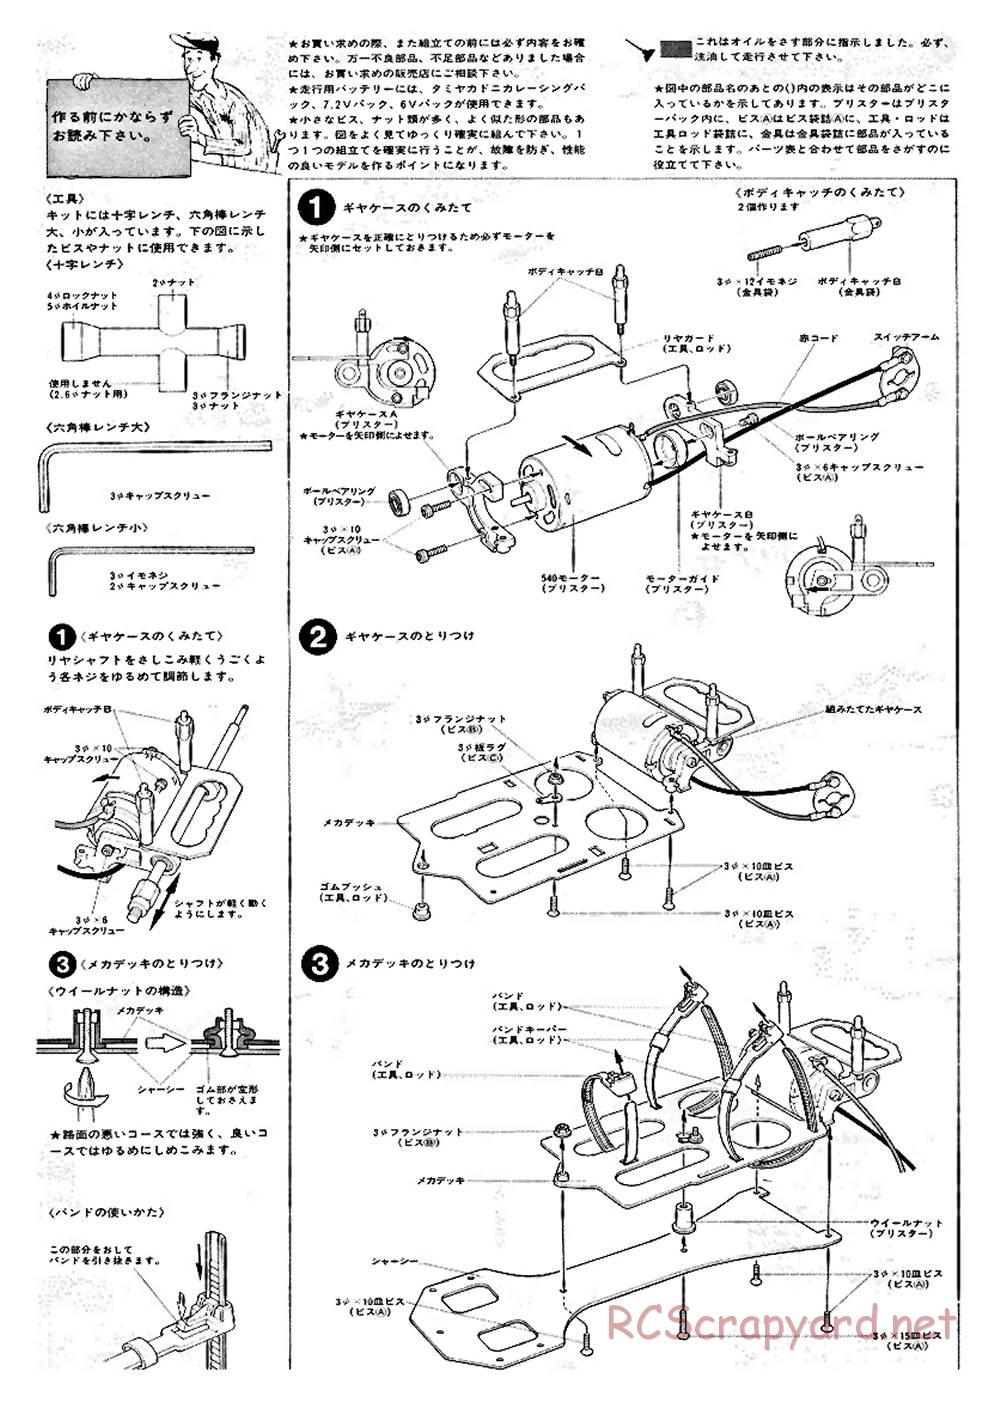 Tamiya - Ford C100 - RM MK.4 - 58033 - Manual - Page 3